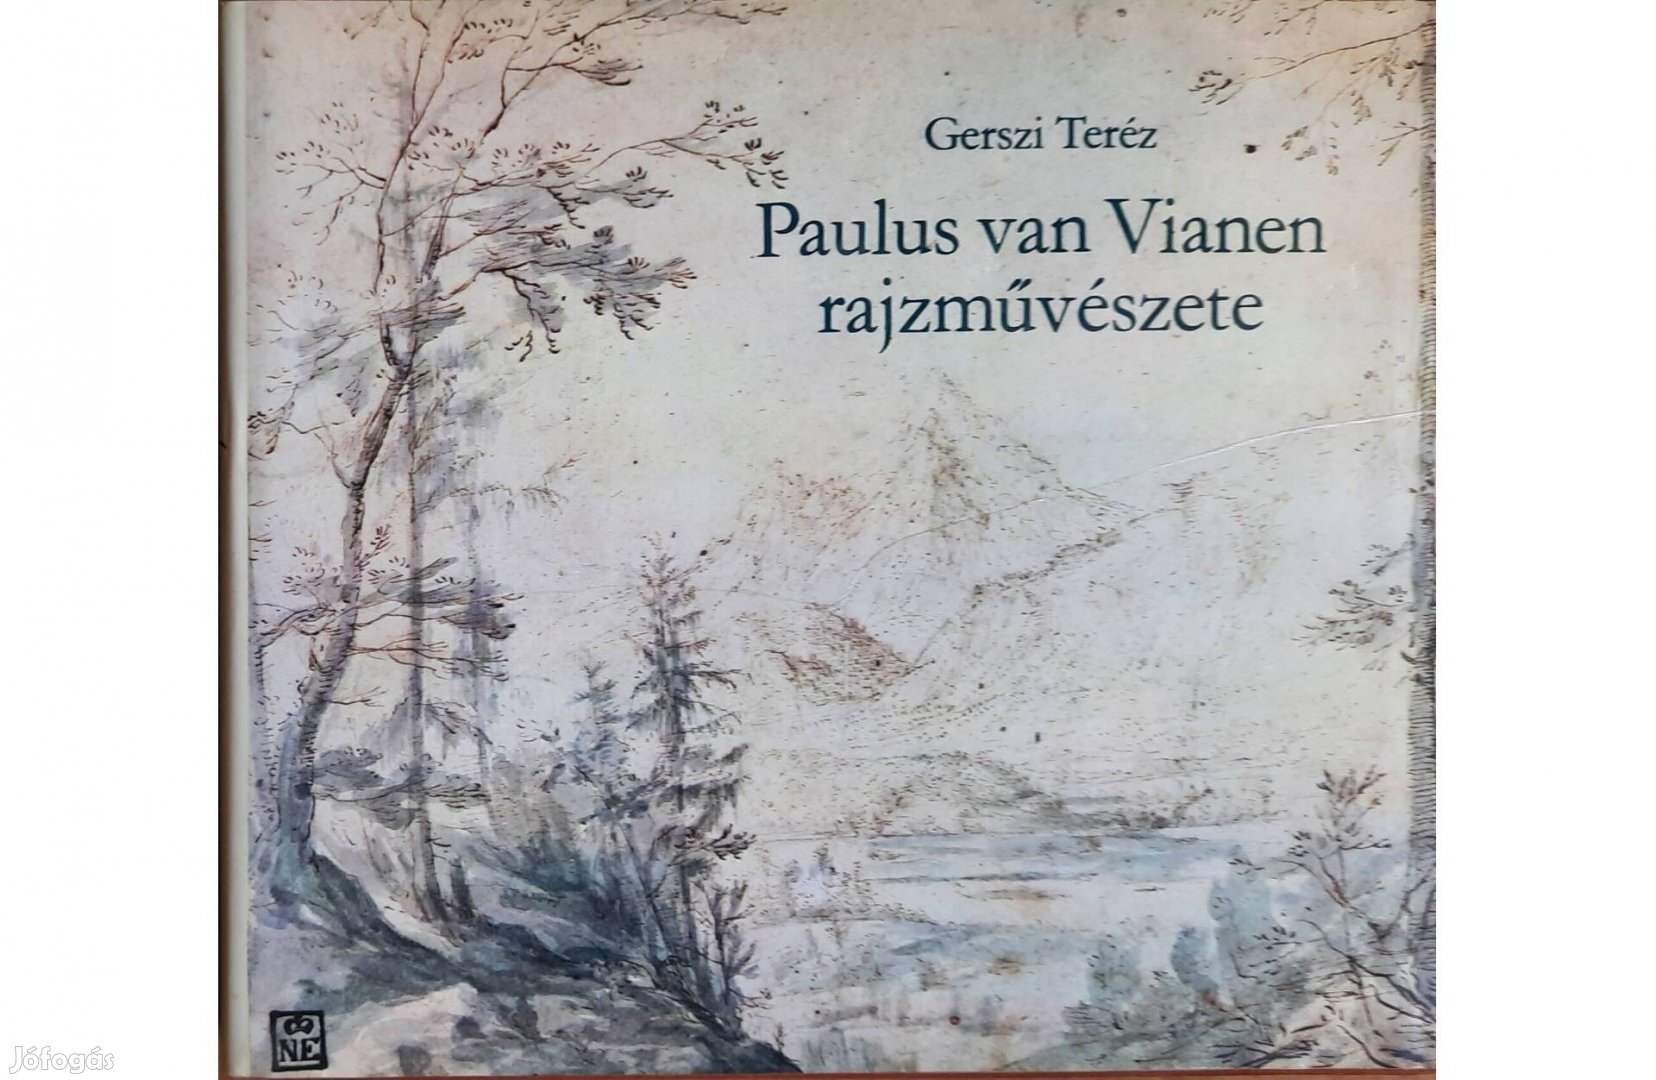 Paulus van Vianen rajzművészete című könyv eladó